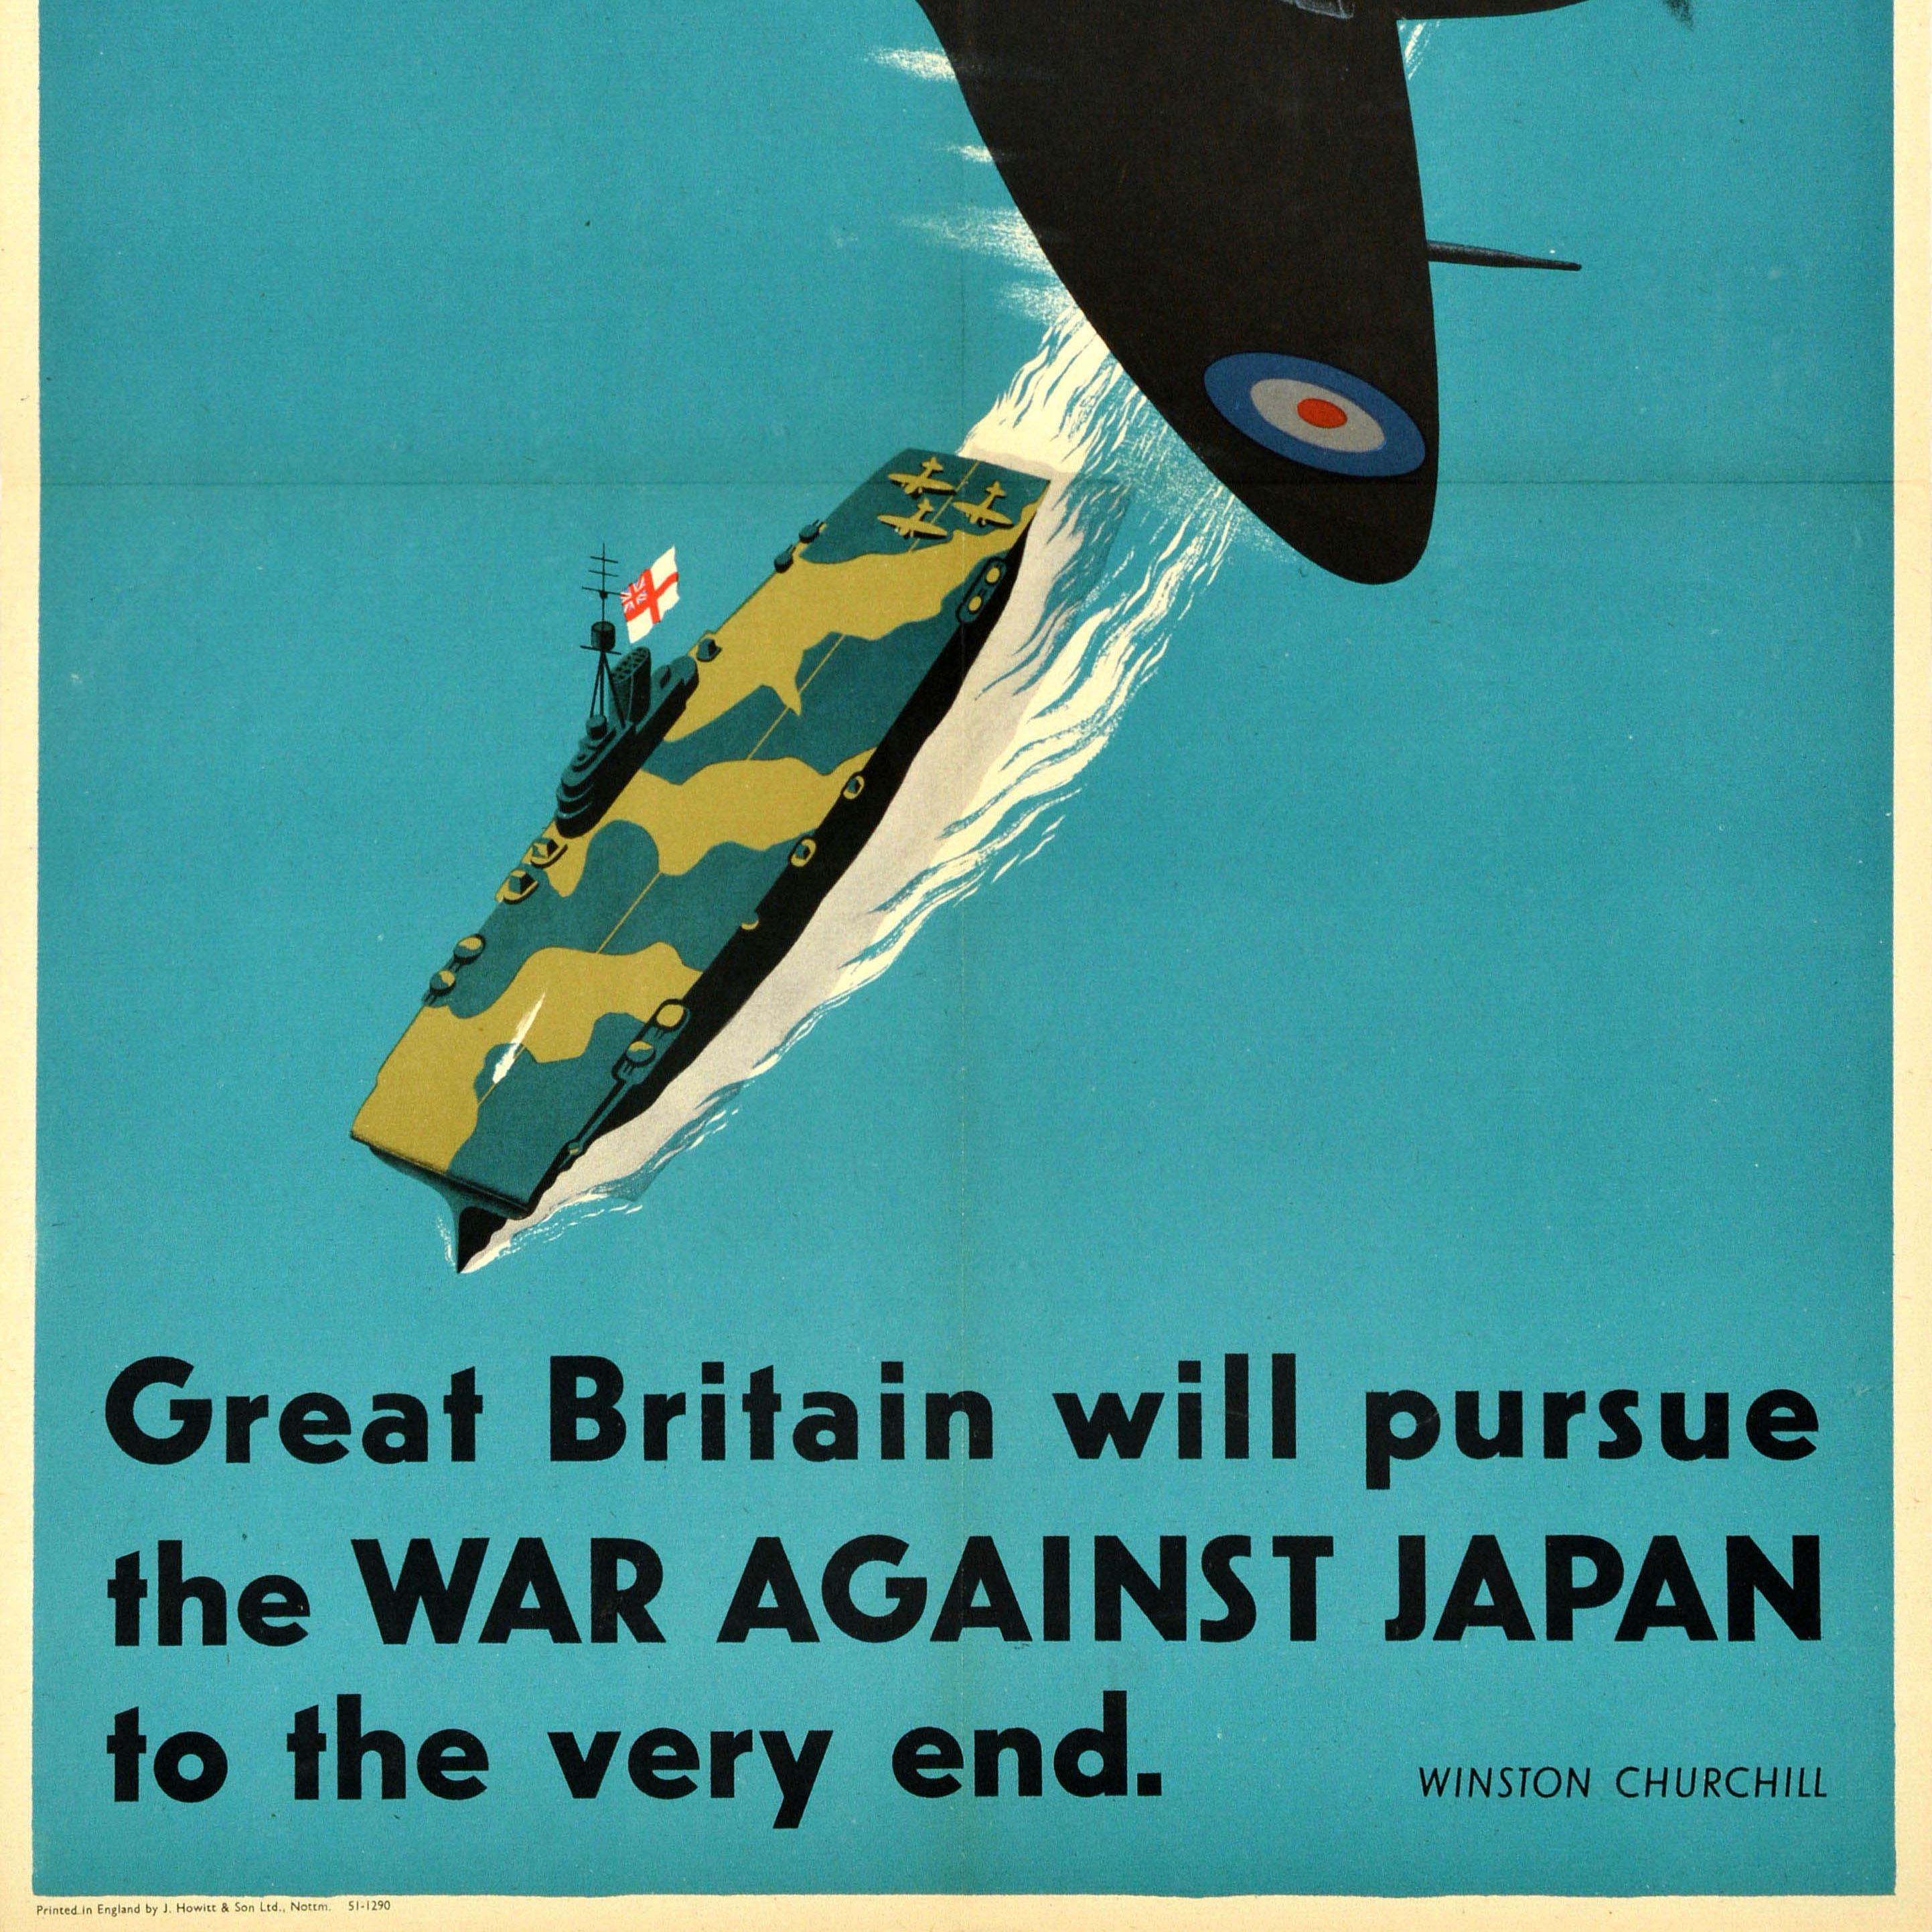 Originalplakat aus dem Zweiten Weltkrieg mit der Illustration eines RAF-Flugzeugs der Royal Air Force, das mit hoher Geschwindigkeit über einem getarnten Kriegsschiff der Royal Navy mit weißer Flagge fliegt, darunter das Zitat von Winston Churchill: